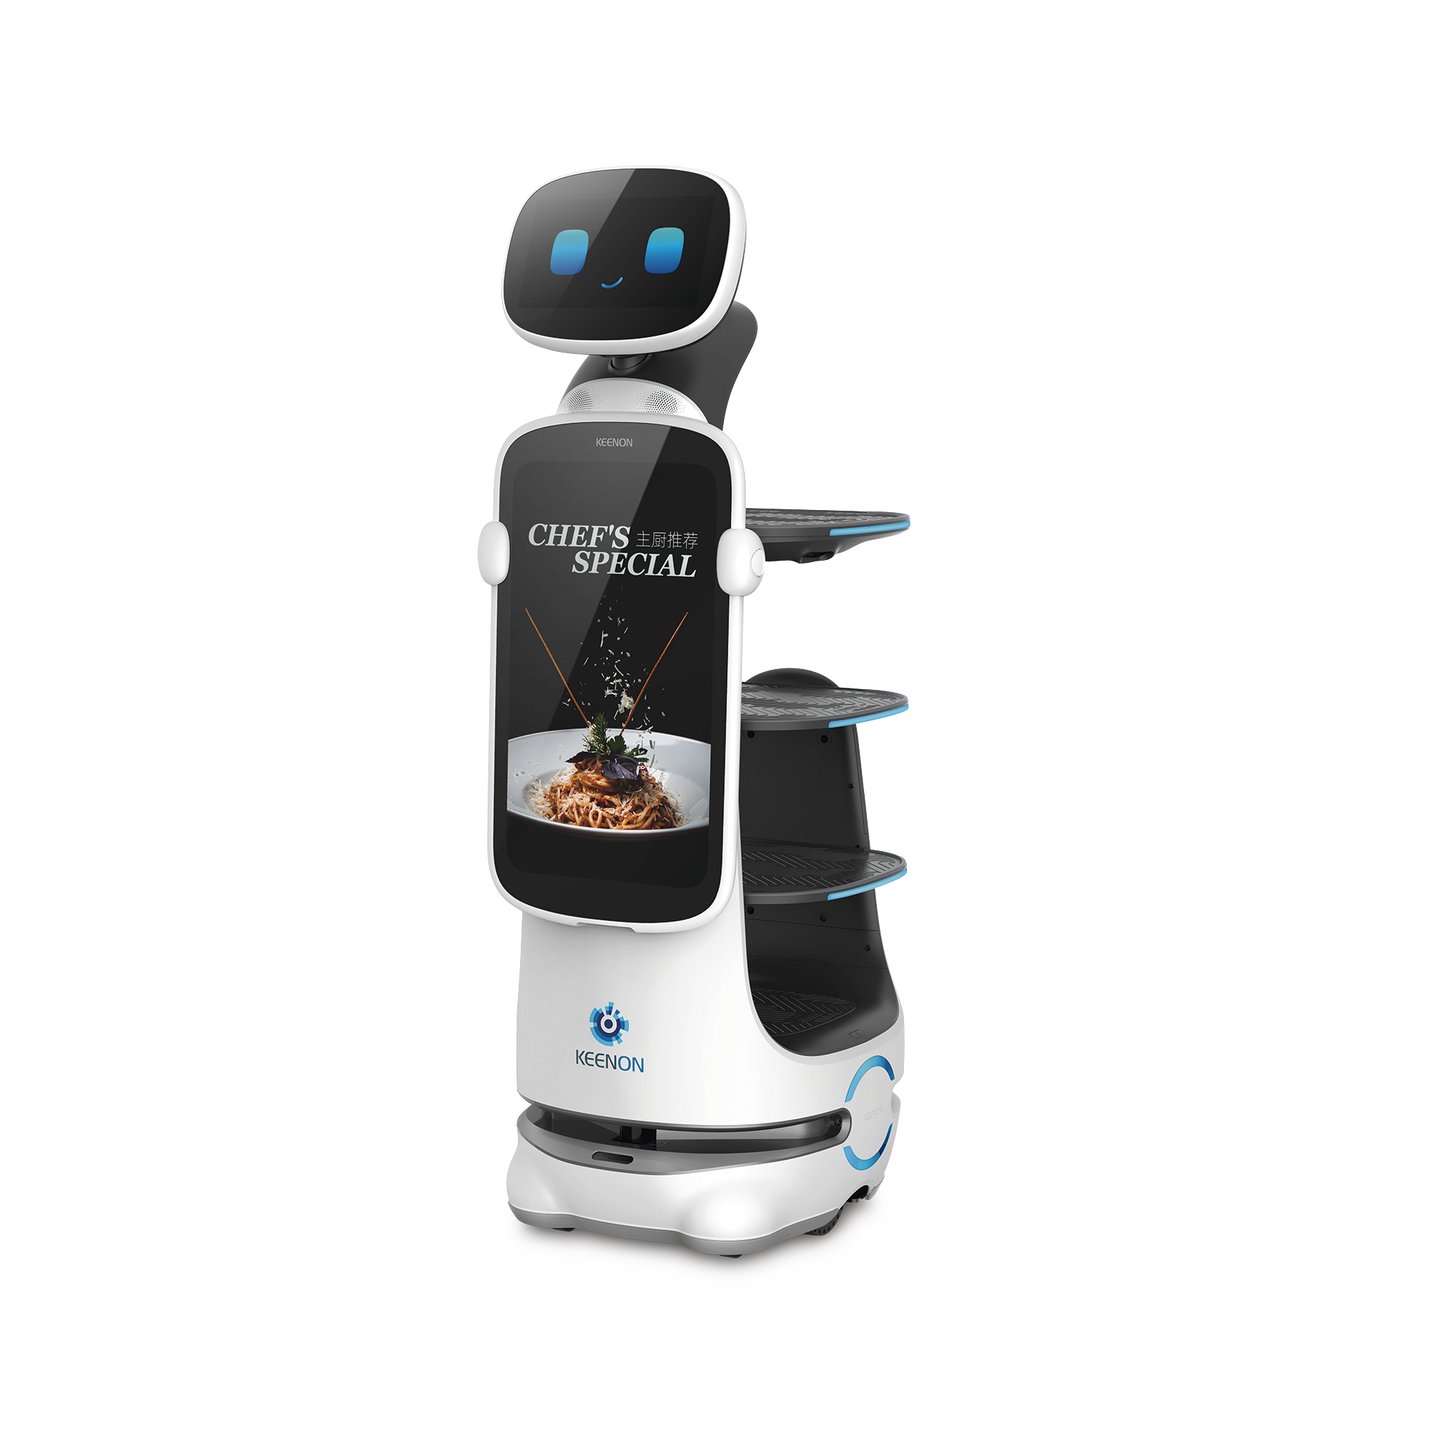 Robot Autonomo para Servicio de Meseros Ubicado por SLAM (Laser) / Mejora el Servicio al Cliente / Soporta 10 Kgs por Charola / Ideal para Restaurantes, Cafeterias, Hospitales, Salones de Eventos, Etc...